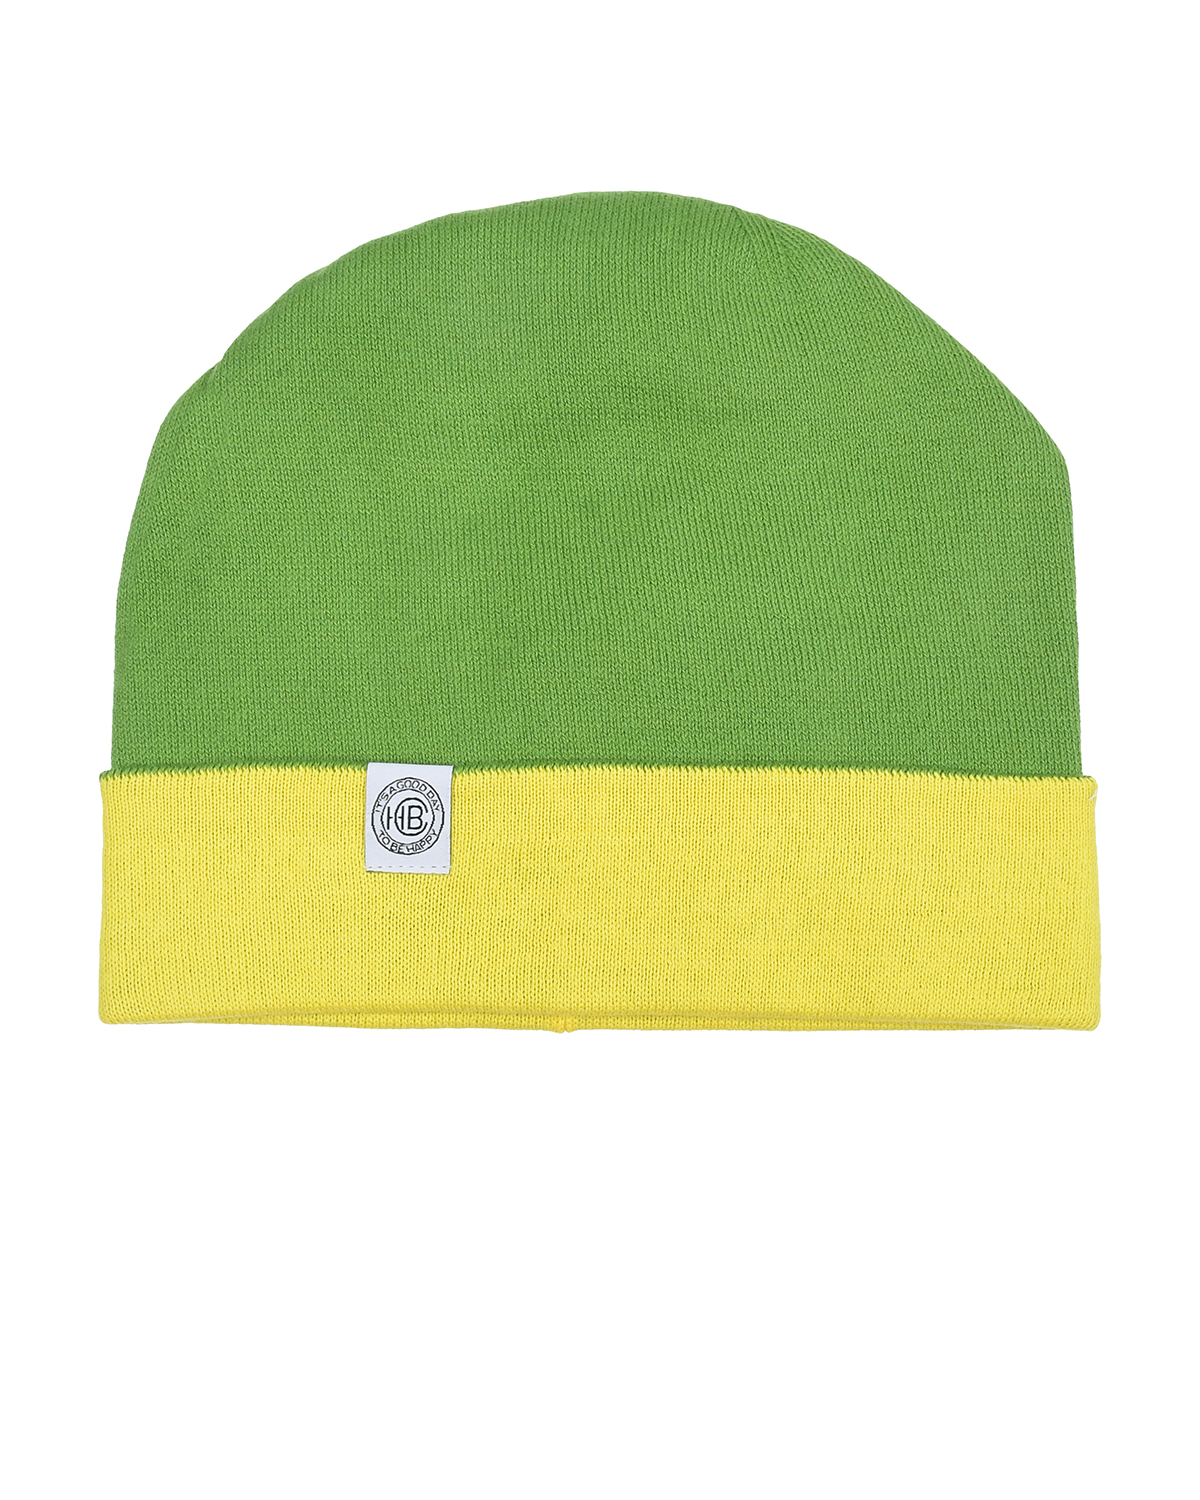 Зеленая шапка с желтым отворотом Chobi, размер 53, цвет зеленый